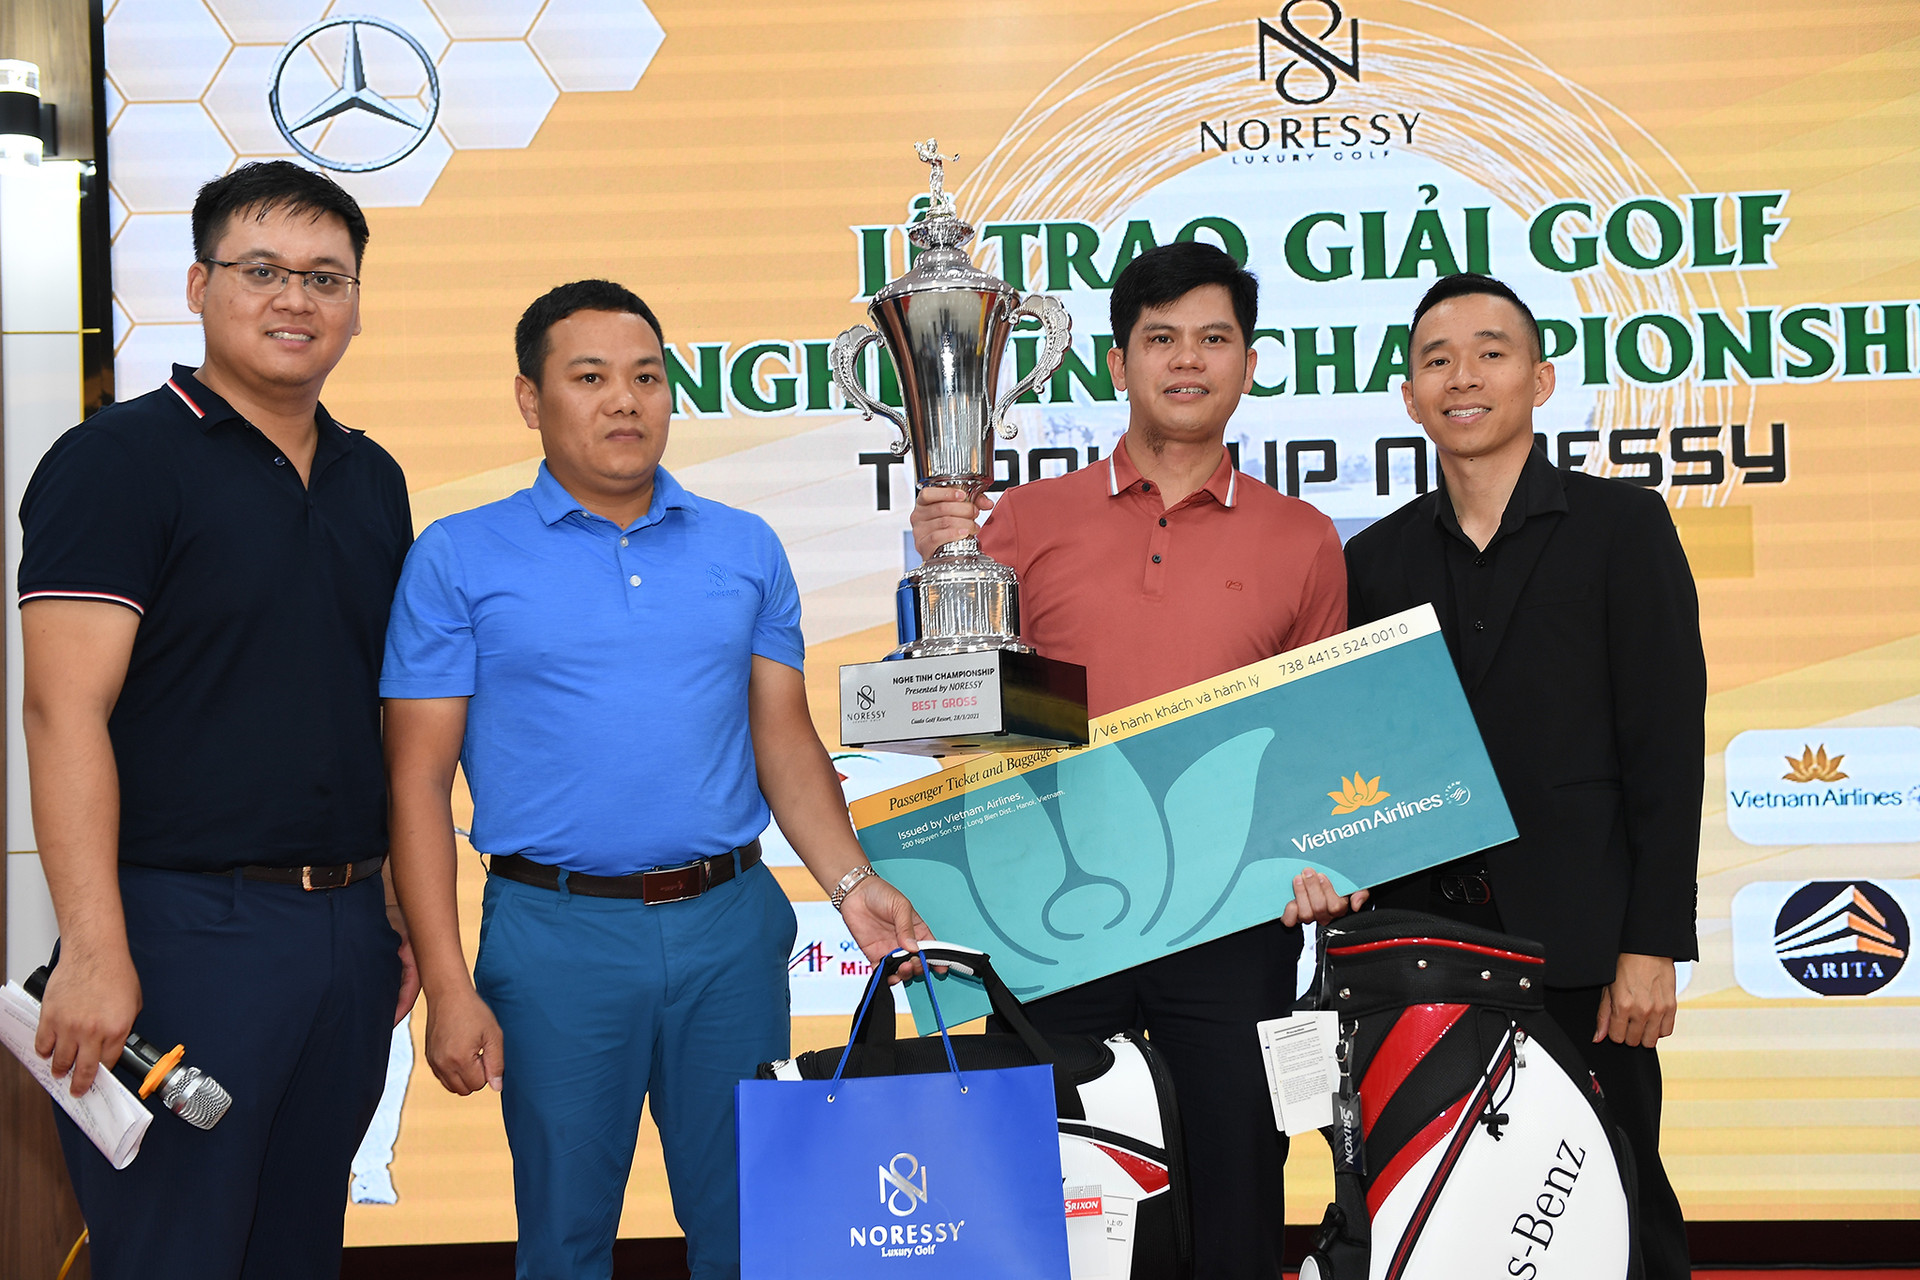 Golfer Đậu Ngọc Linh vô địch giải golf Nghệ Tĩnh Championship tranh cúp Noressy - Ảnh 2.